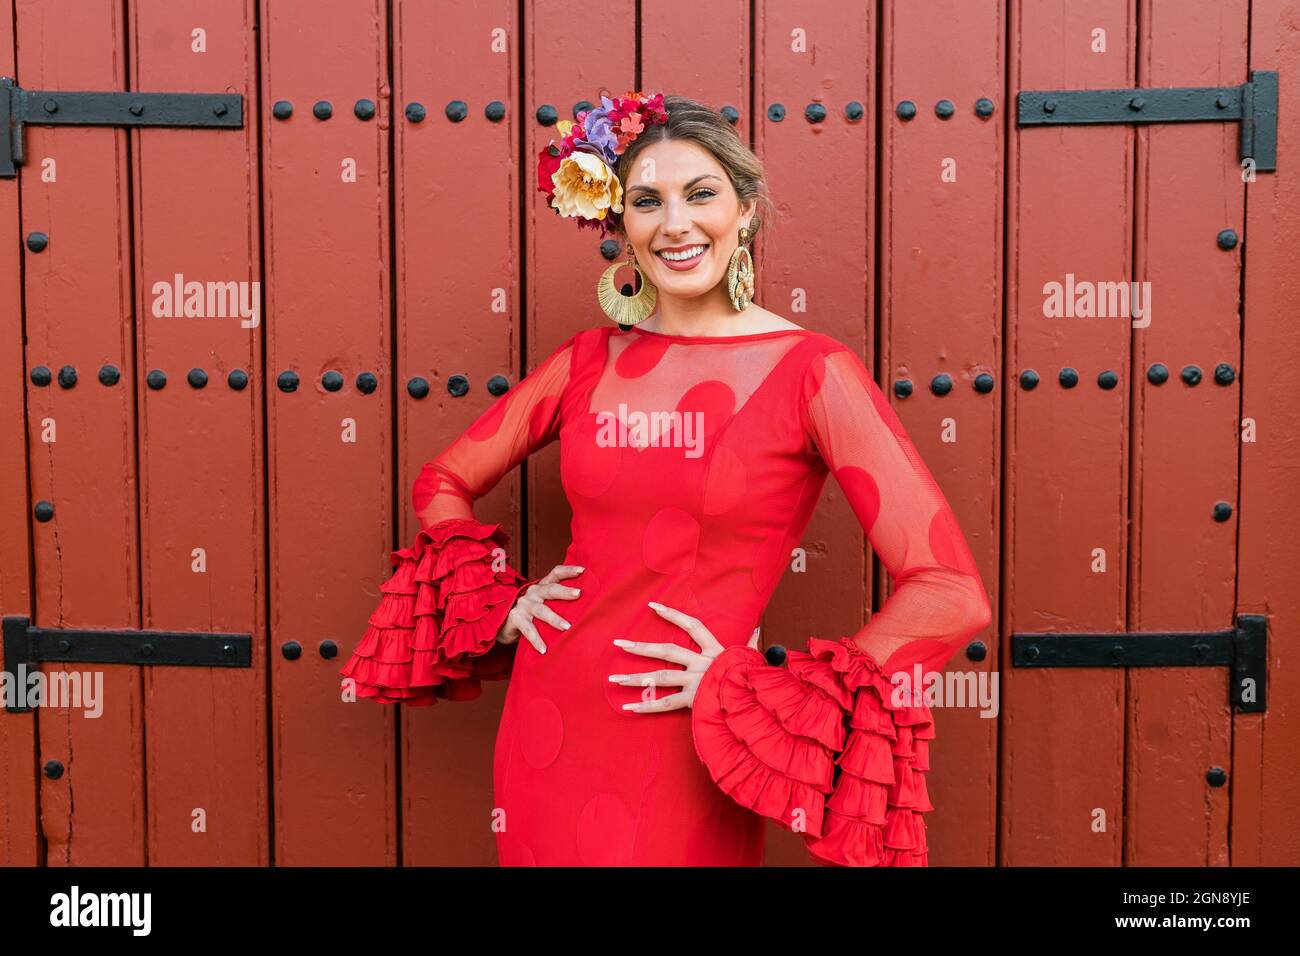 Danseuse de flamenco souriante devant la porte rouge Banque D'Images